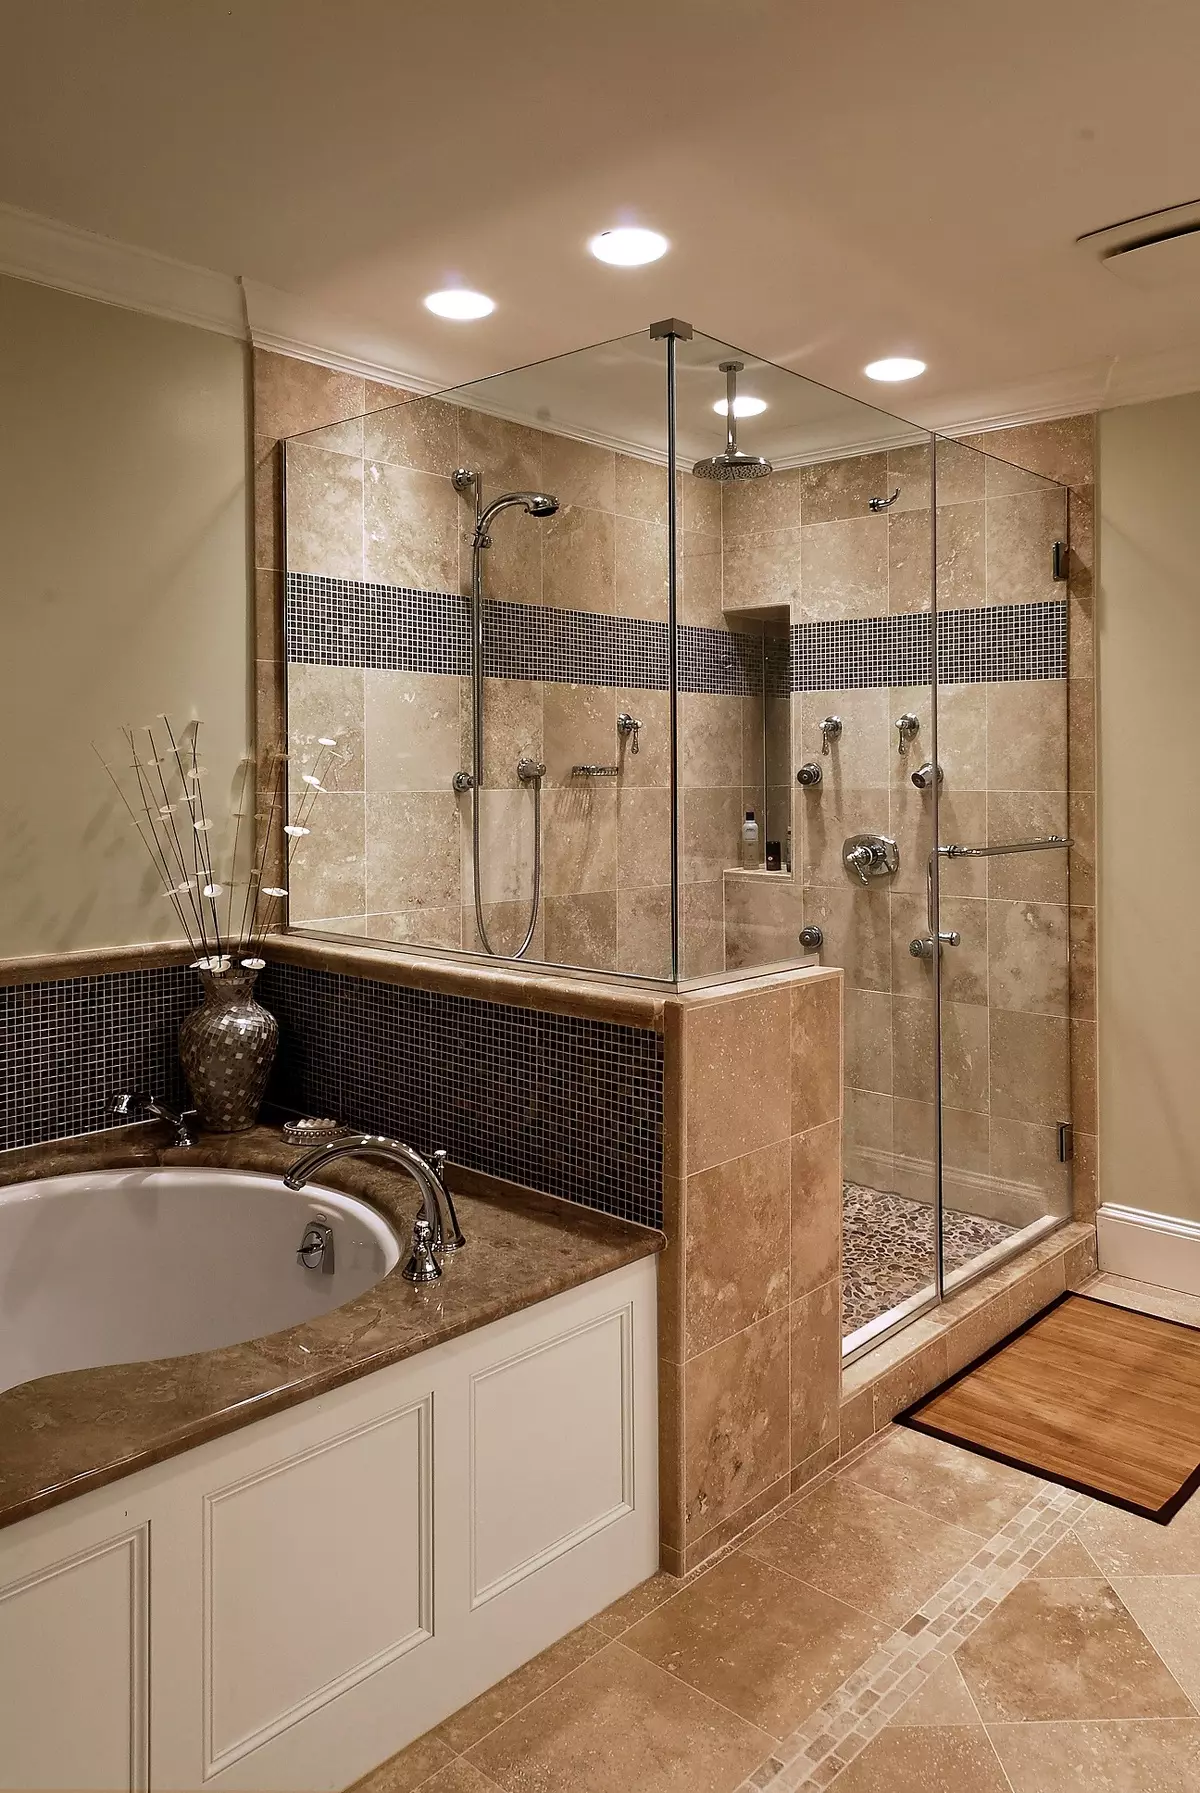 Suihku kylpyhuone ilman mökkiä (86 valokuvaa): Kylpyhuoneen suunnitteluvaihtoehdot suihkulla ilman kuormalavaa ja laattakaapit, projektit 21384_80